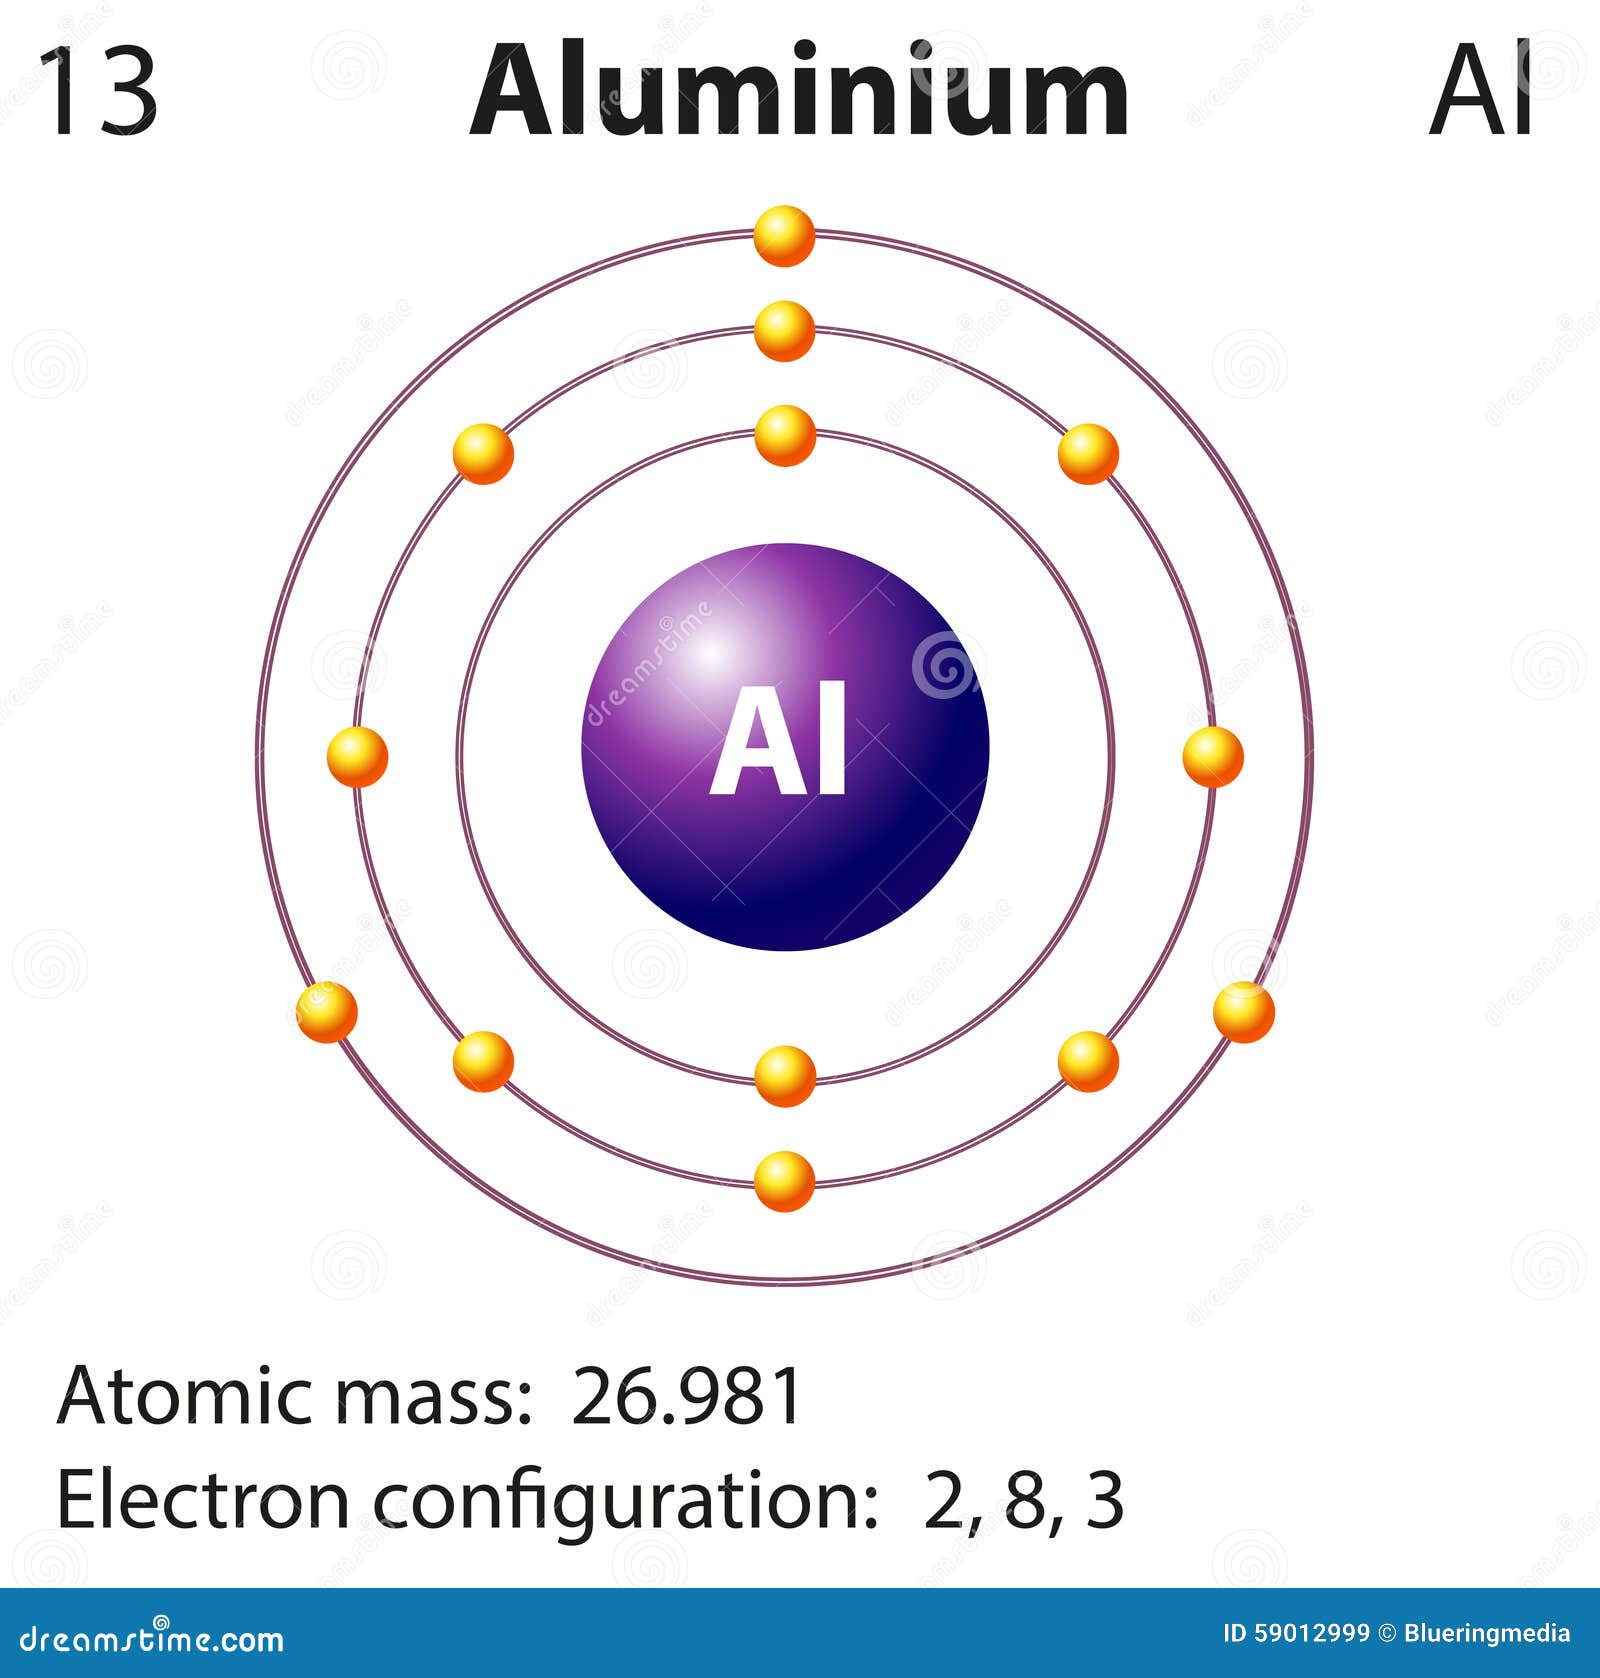 aluminum bohr diagram